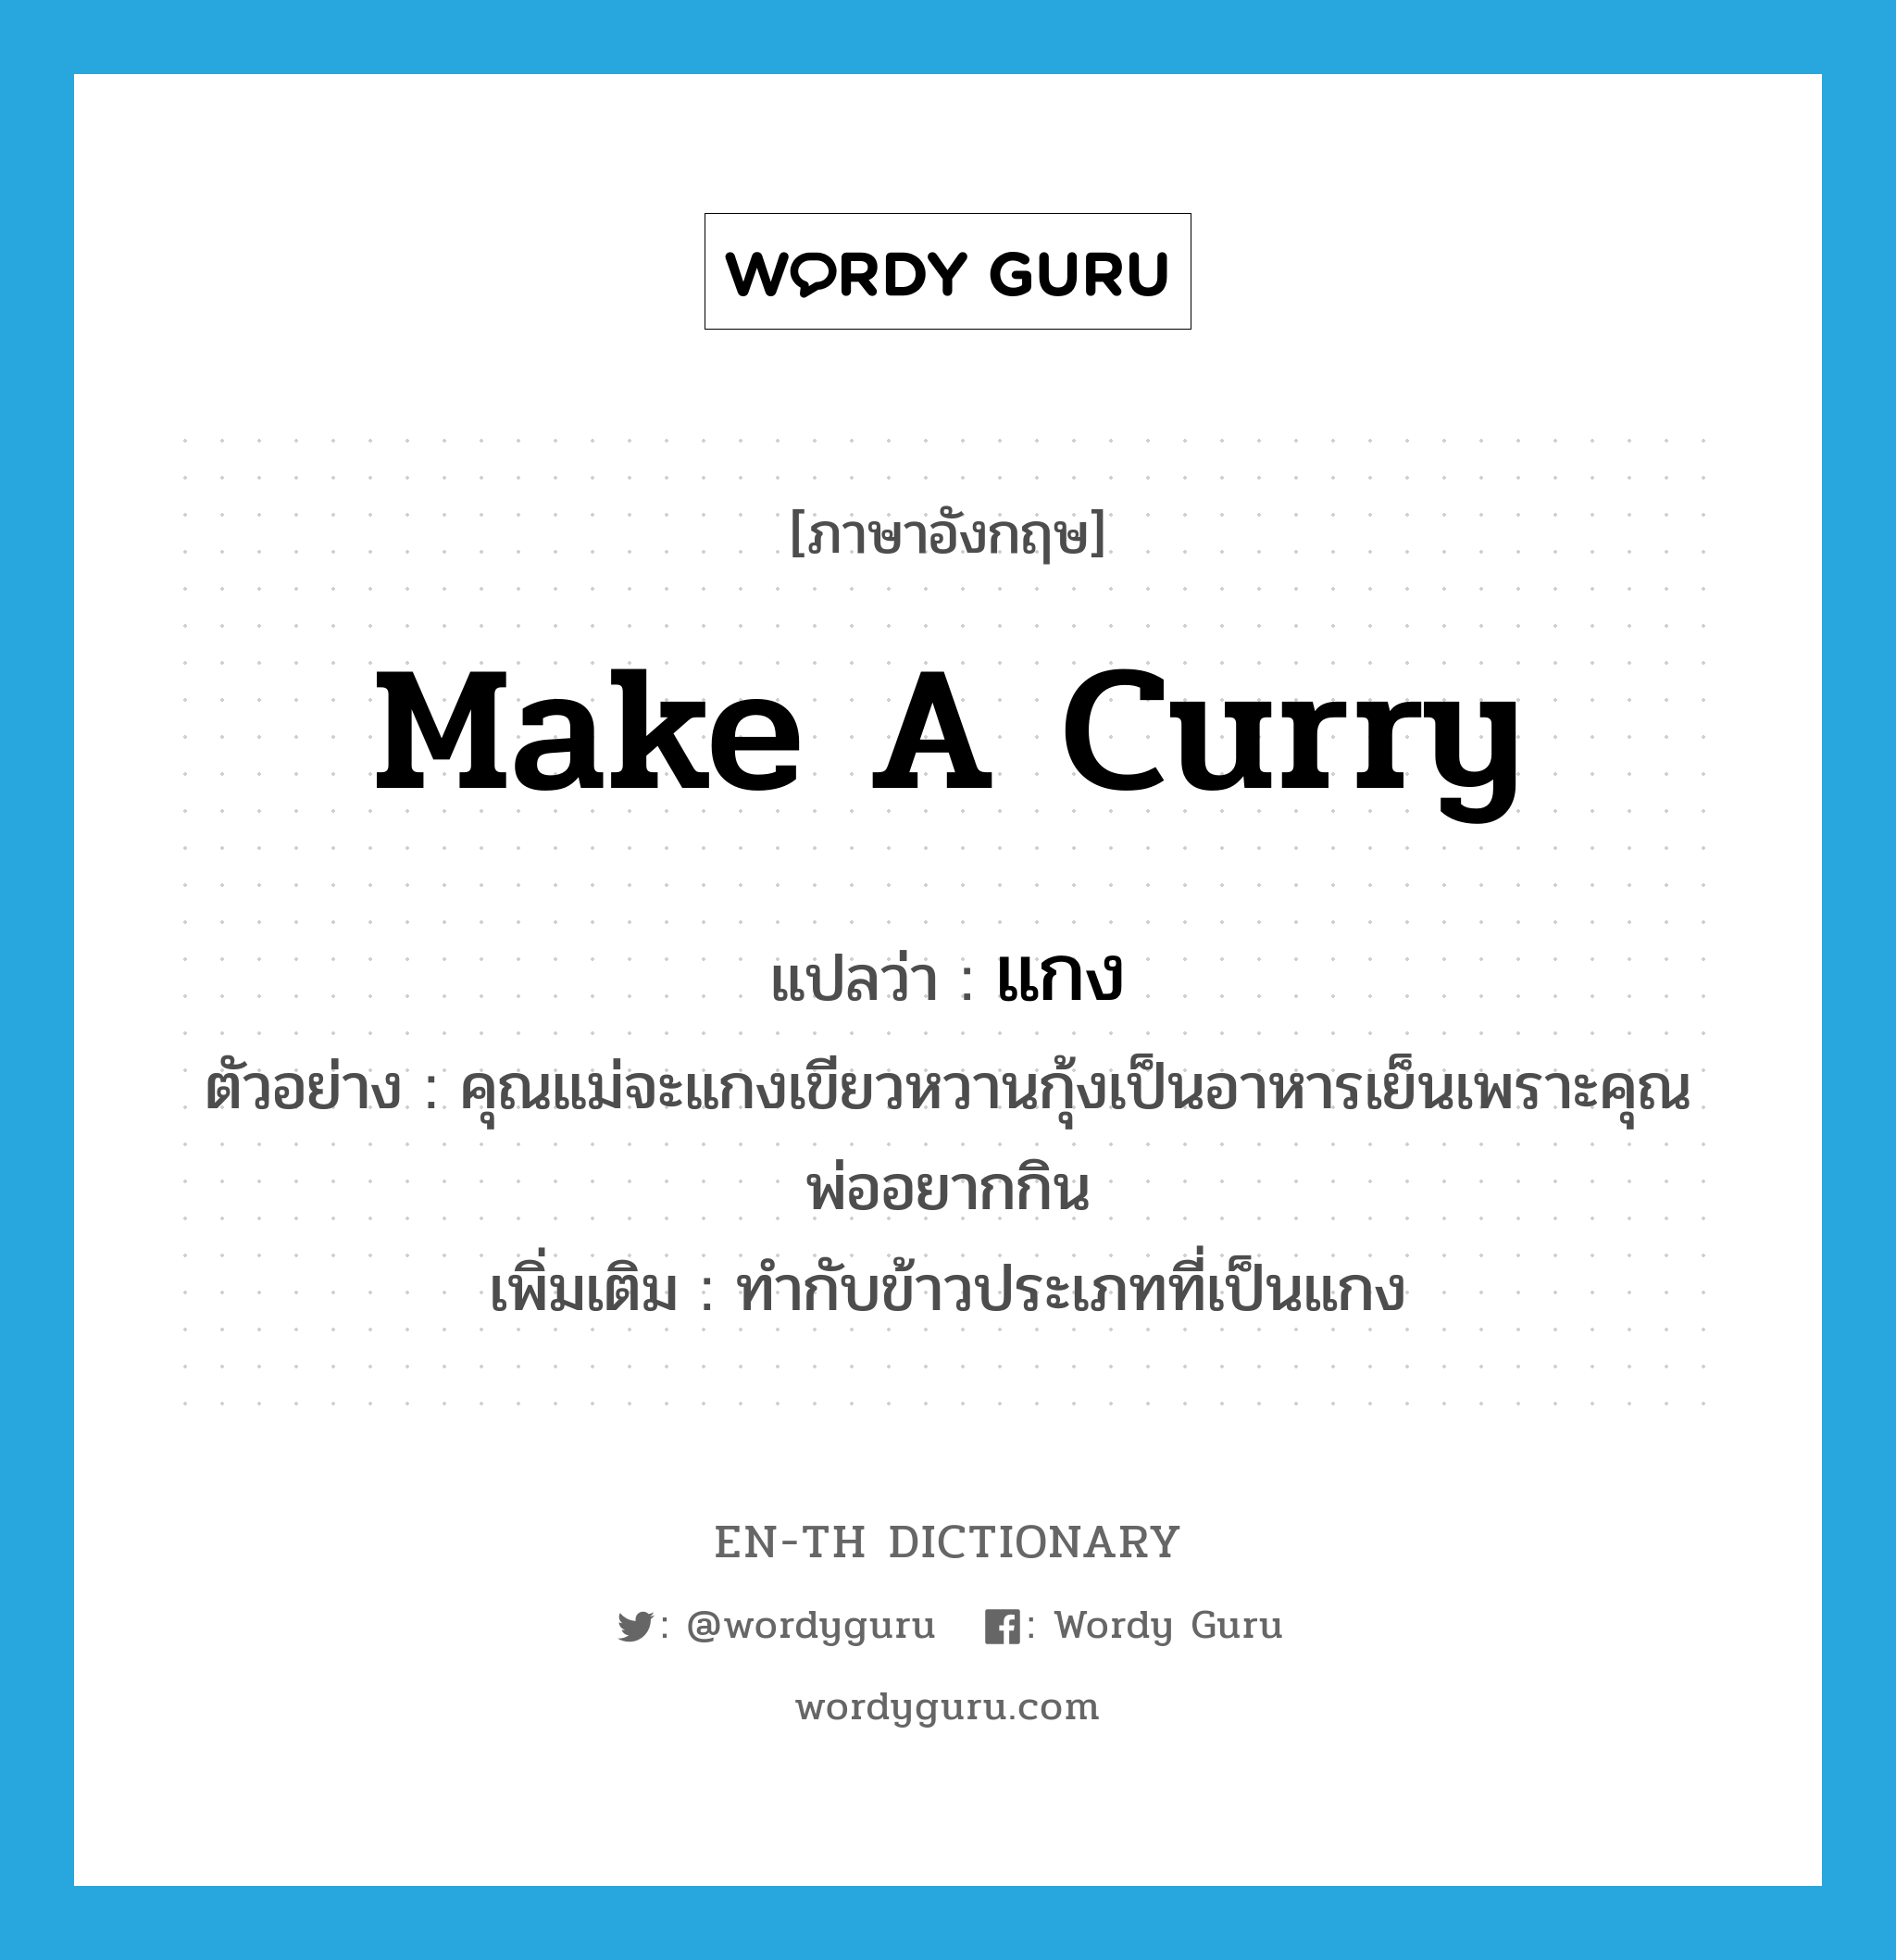 make a curry แปลว่า?, คำศัพท์ภาษาอังกฤษ make a curry แปลว่า แกง ประเภท V ตัวอย่าง คุณแม่จะแกงเขียวหวานกุ้งเป็นอาหารเย็นเพราะคุณพ่ออยากกิน เพิ่มเติม ทำกับข้าวประเภทที่เป็นแกง หมวด V